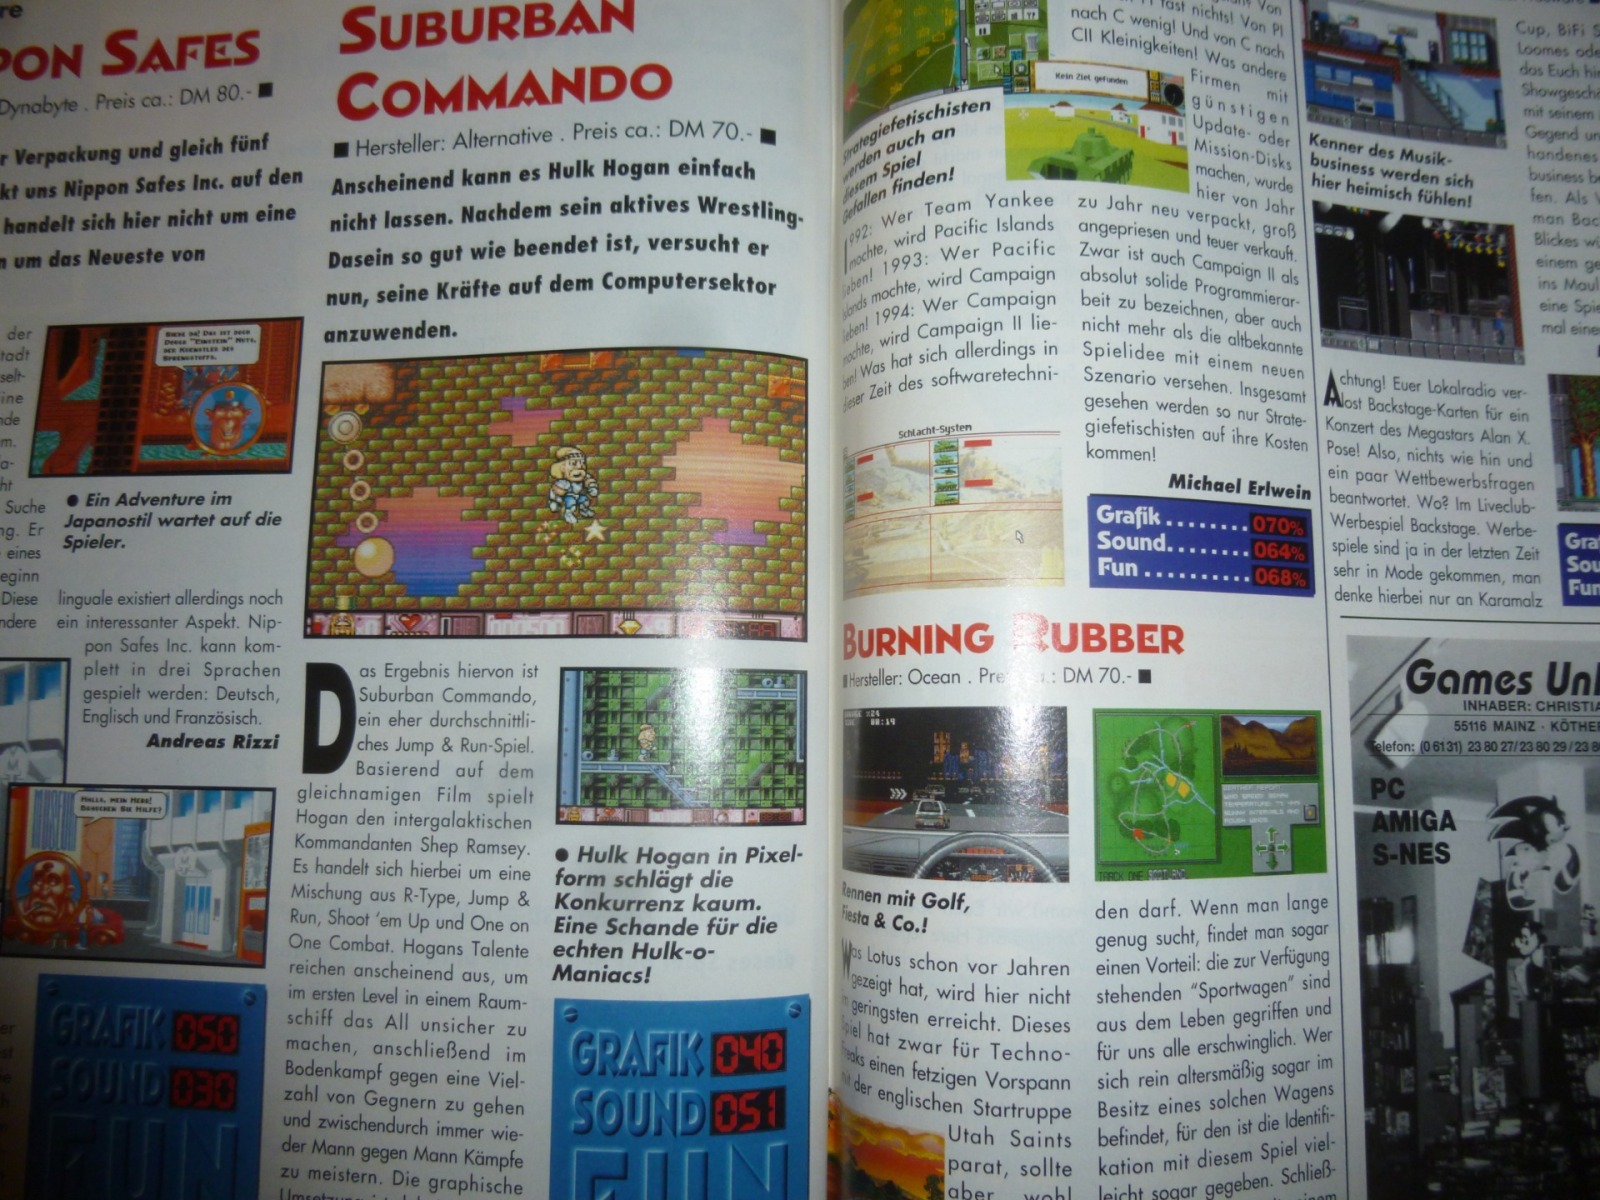 Play Time - Das Computer- und Videospiele-Magazin - Ausgabe 4/94 1994 25